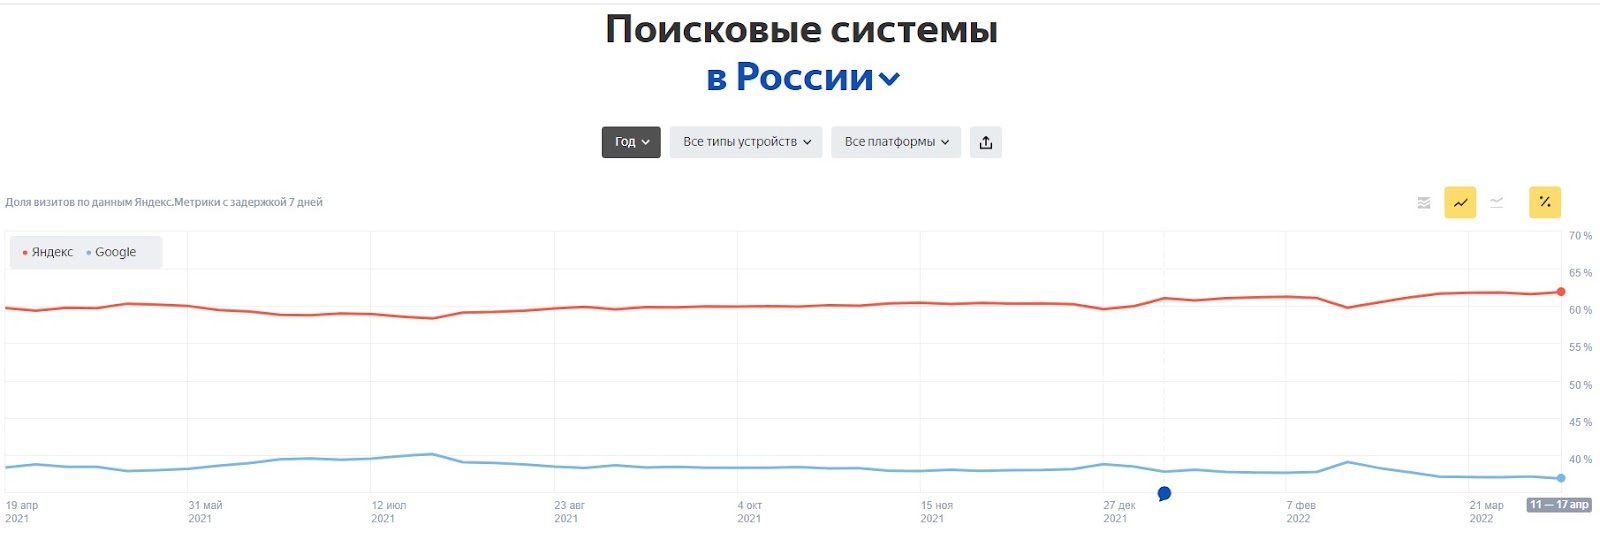 Соотношение пользователей Яндекс и Google